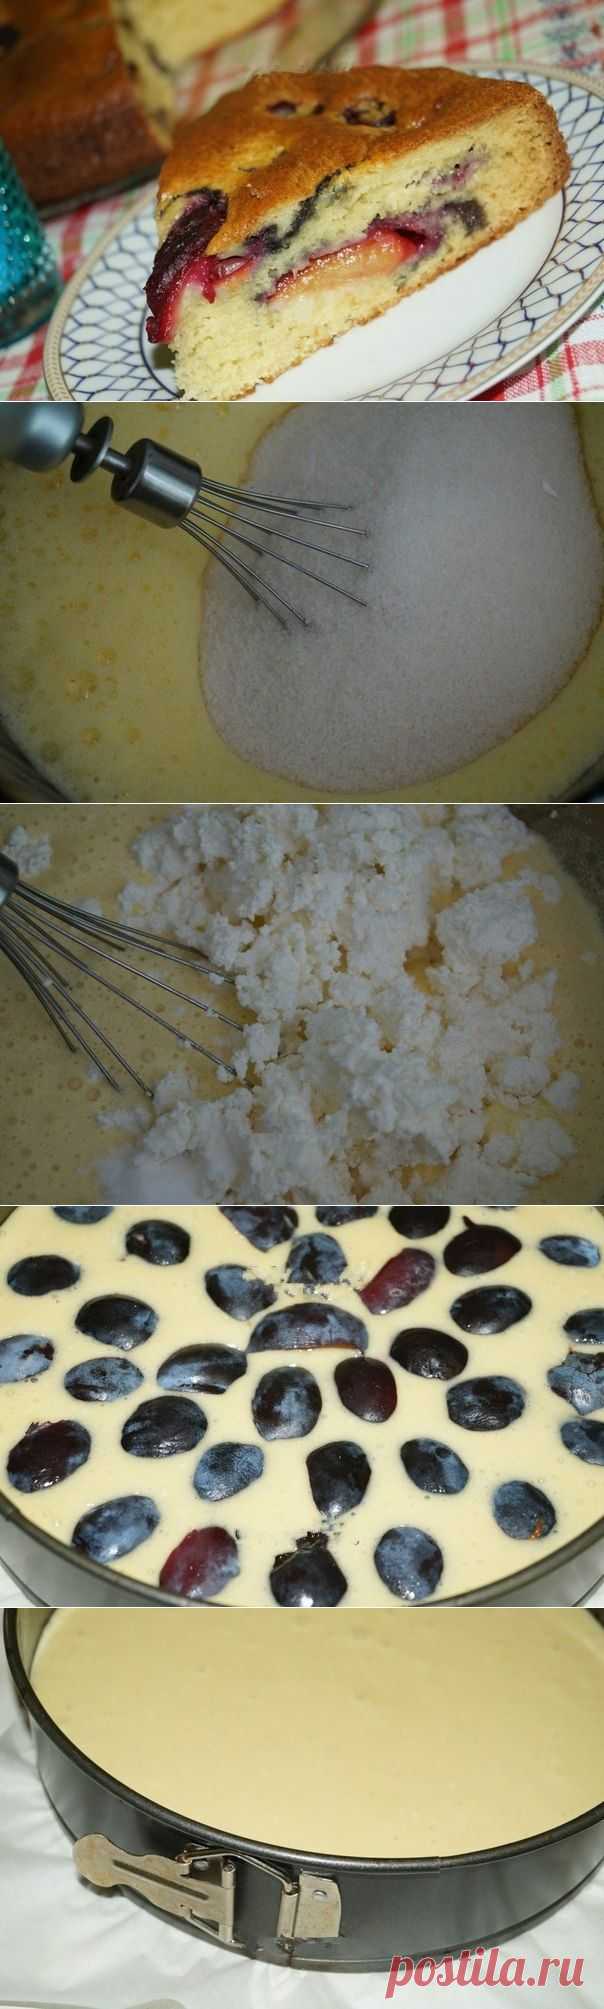 Как приготовить рецепт творожного пирога со сливами. - рецепт, ингридиенты и фотографии